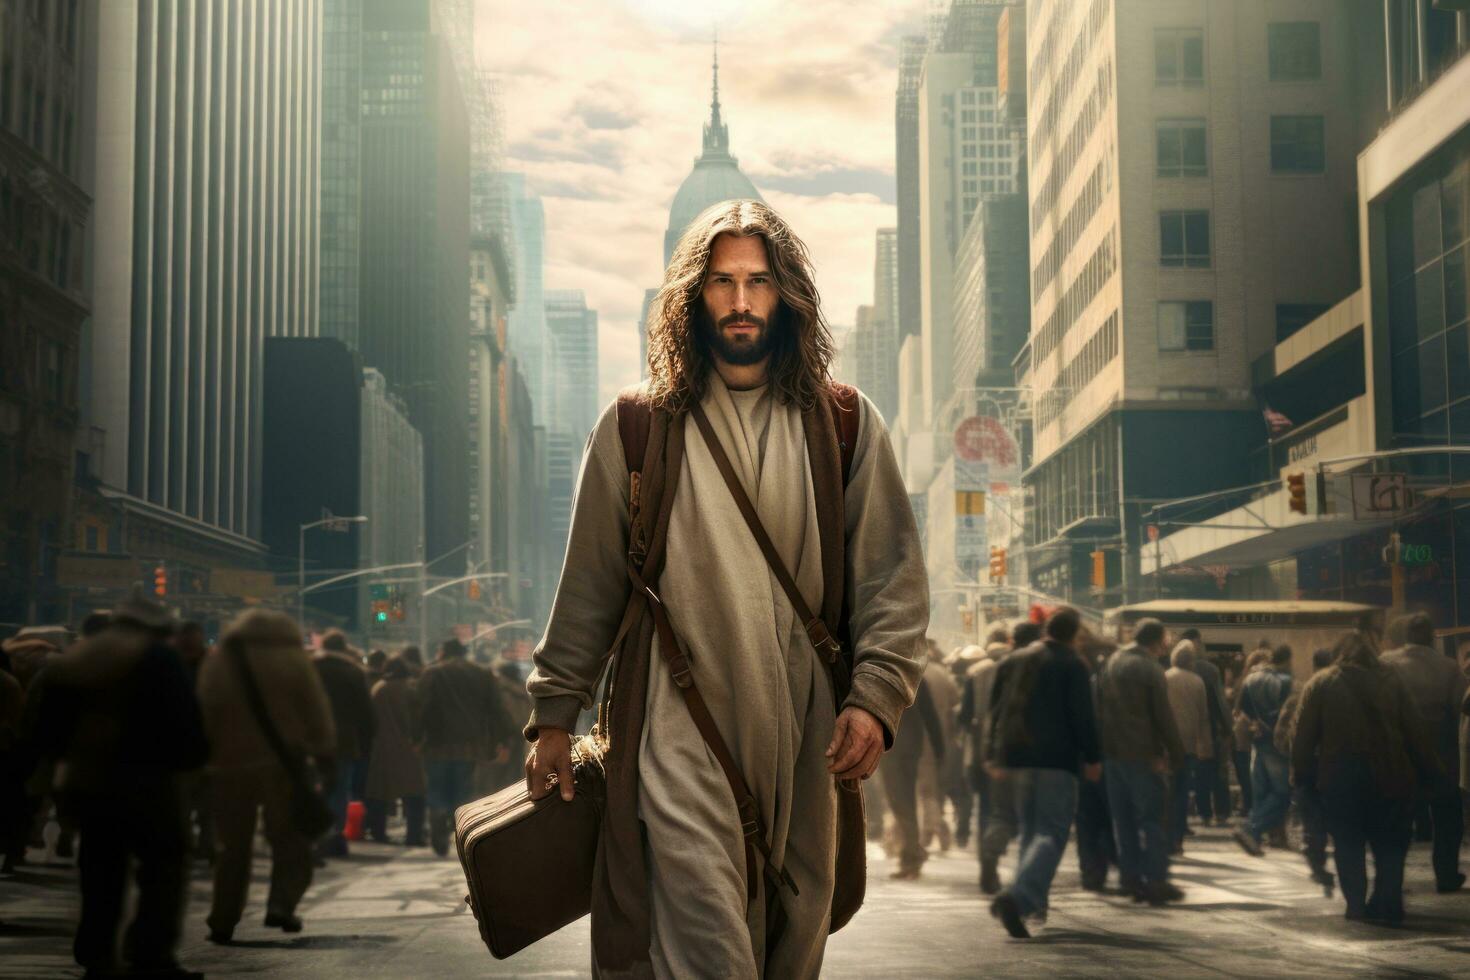 Jésus est permanent dans une passage clouté avec une taxi photo